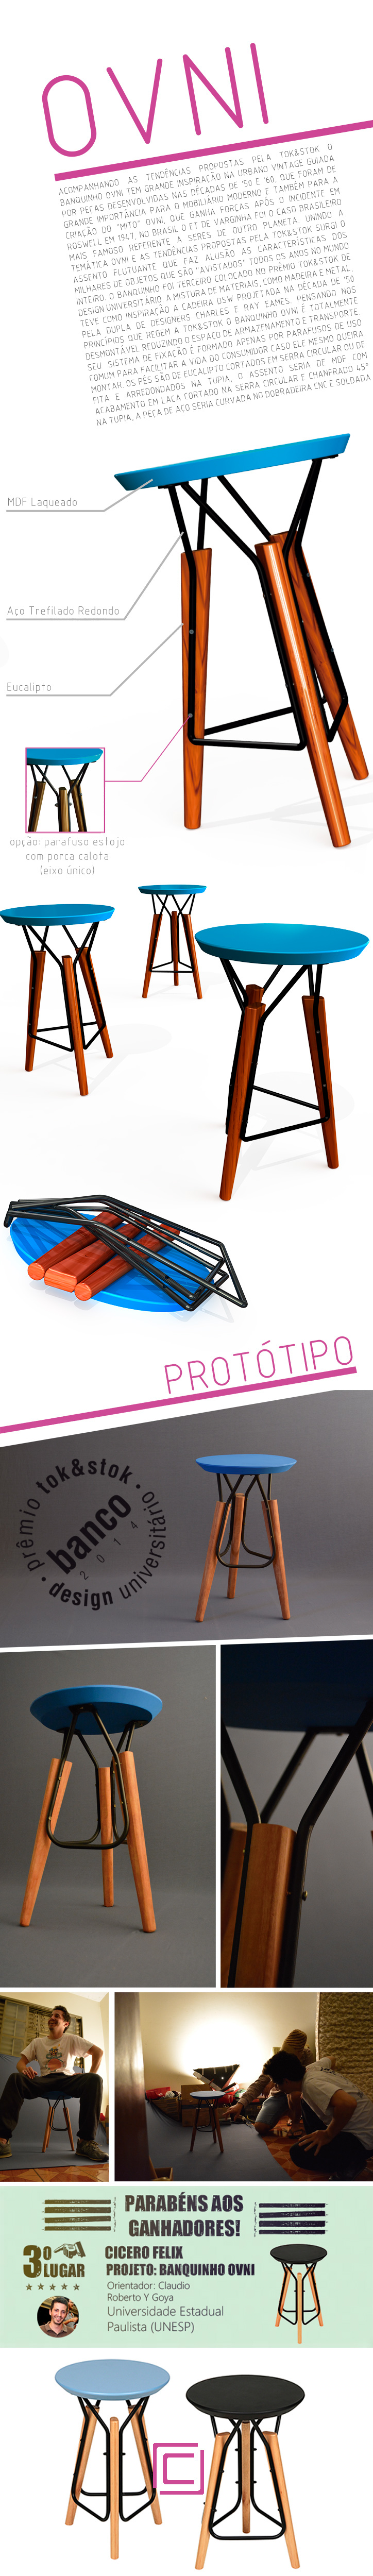 Banquinho premio Madeira wood metal stool Tok&Stok Design Universitário design furniture móvel